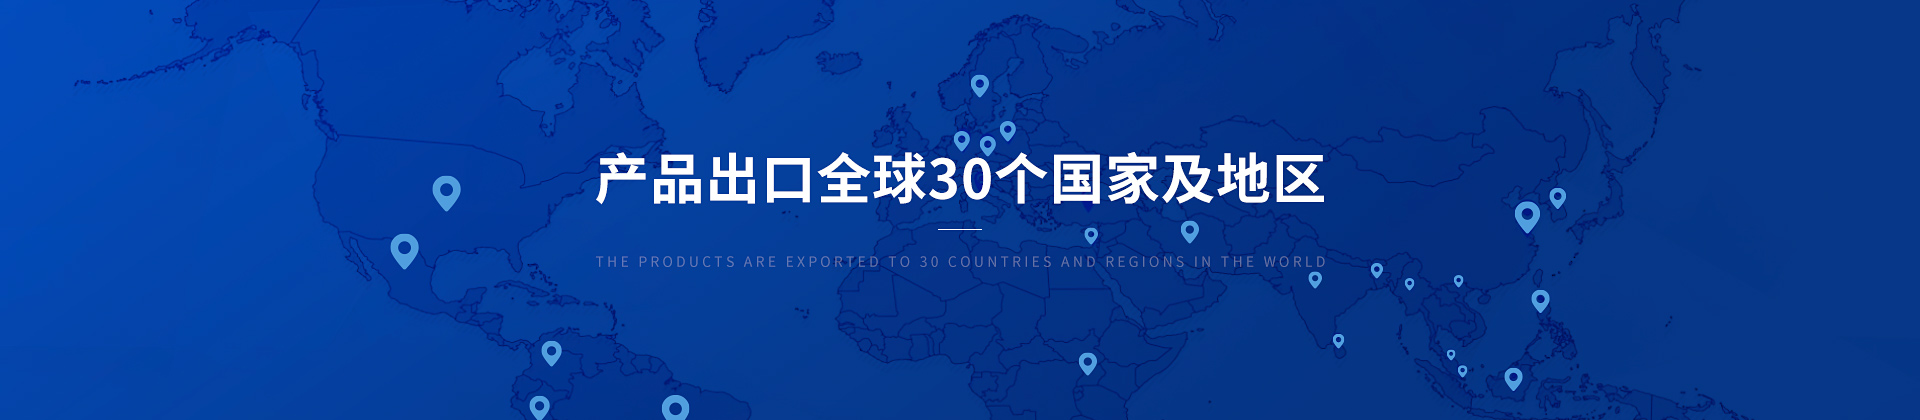 博取仪器产品出口30个国家及地区